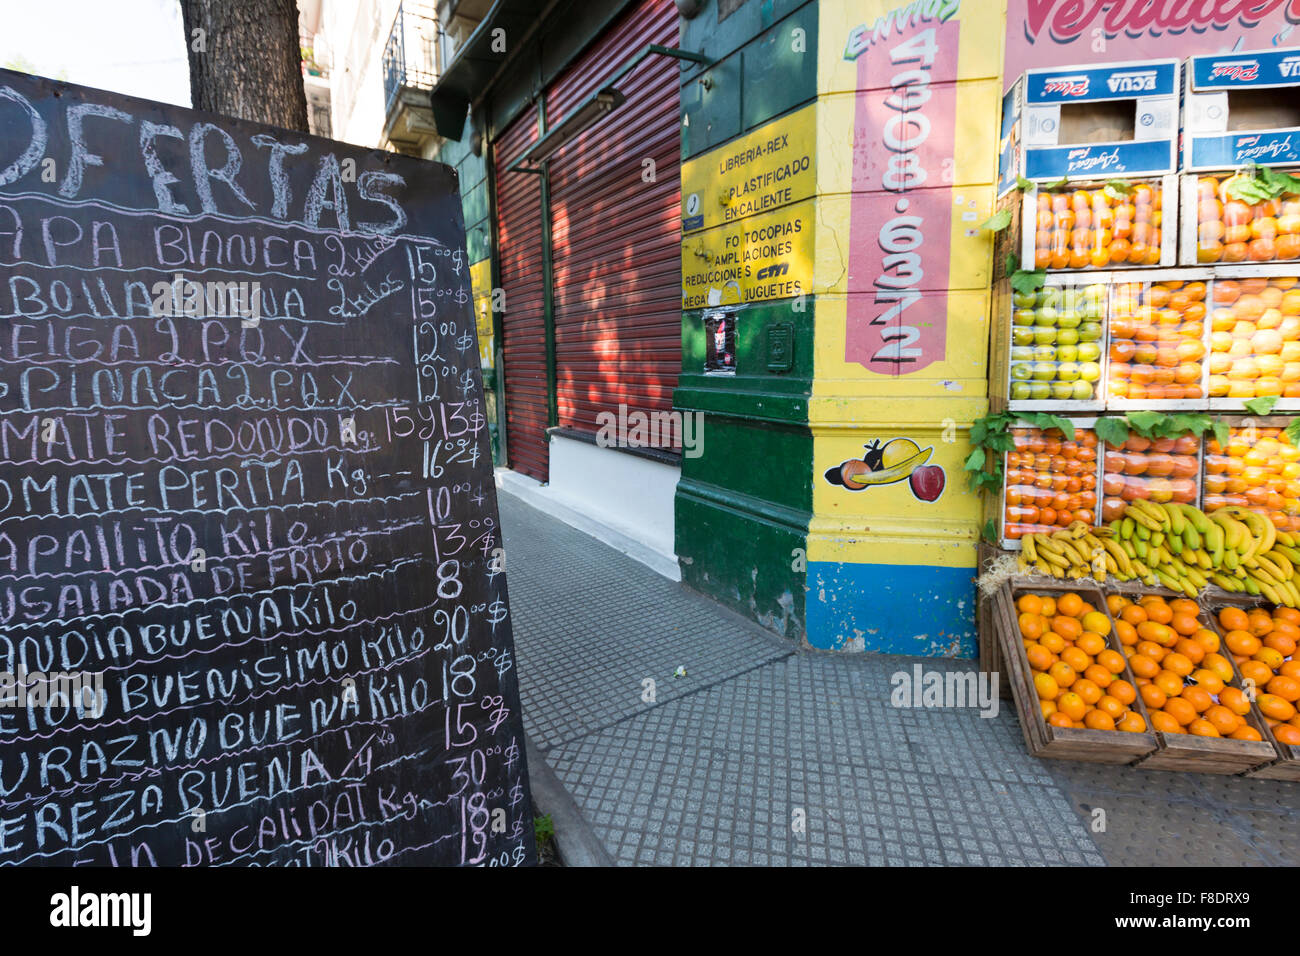 Im freien-Obst-Shop in Buenos Aires, Argentinien Stockfoto